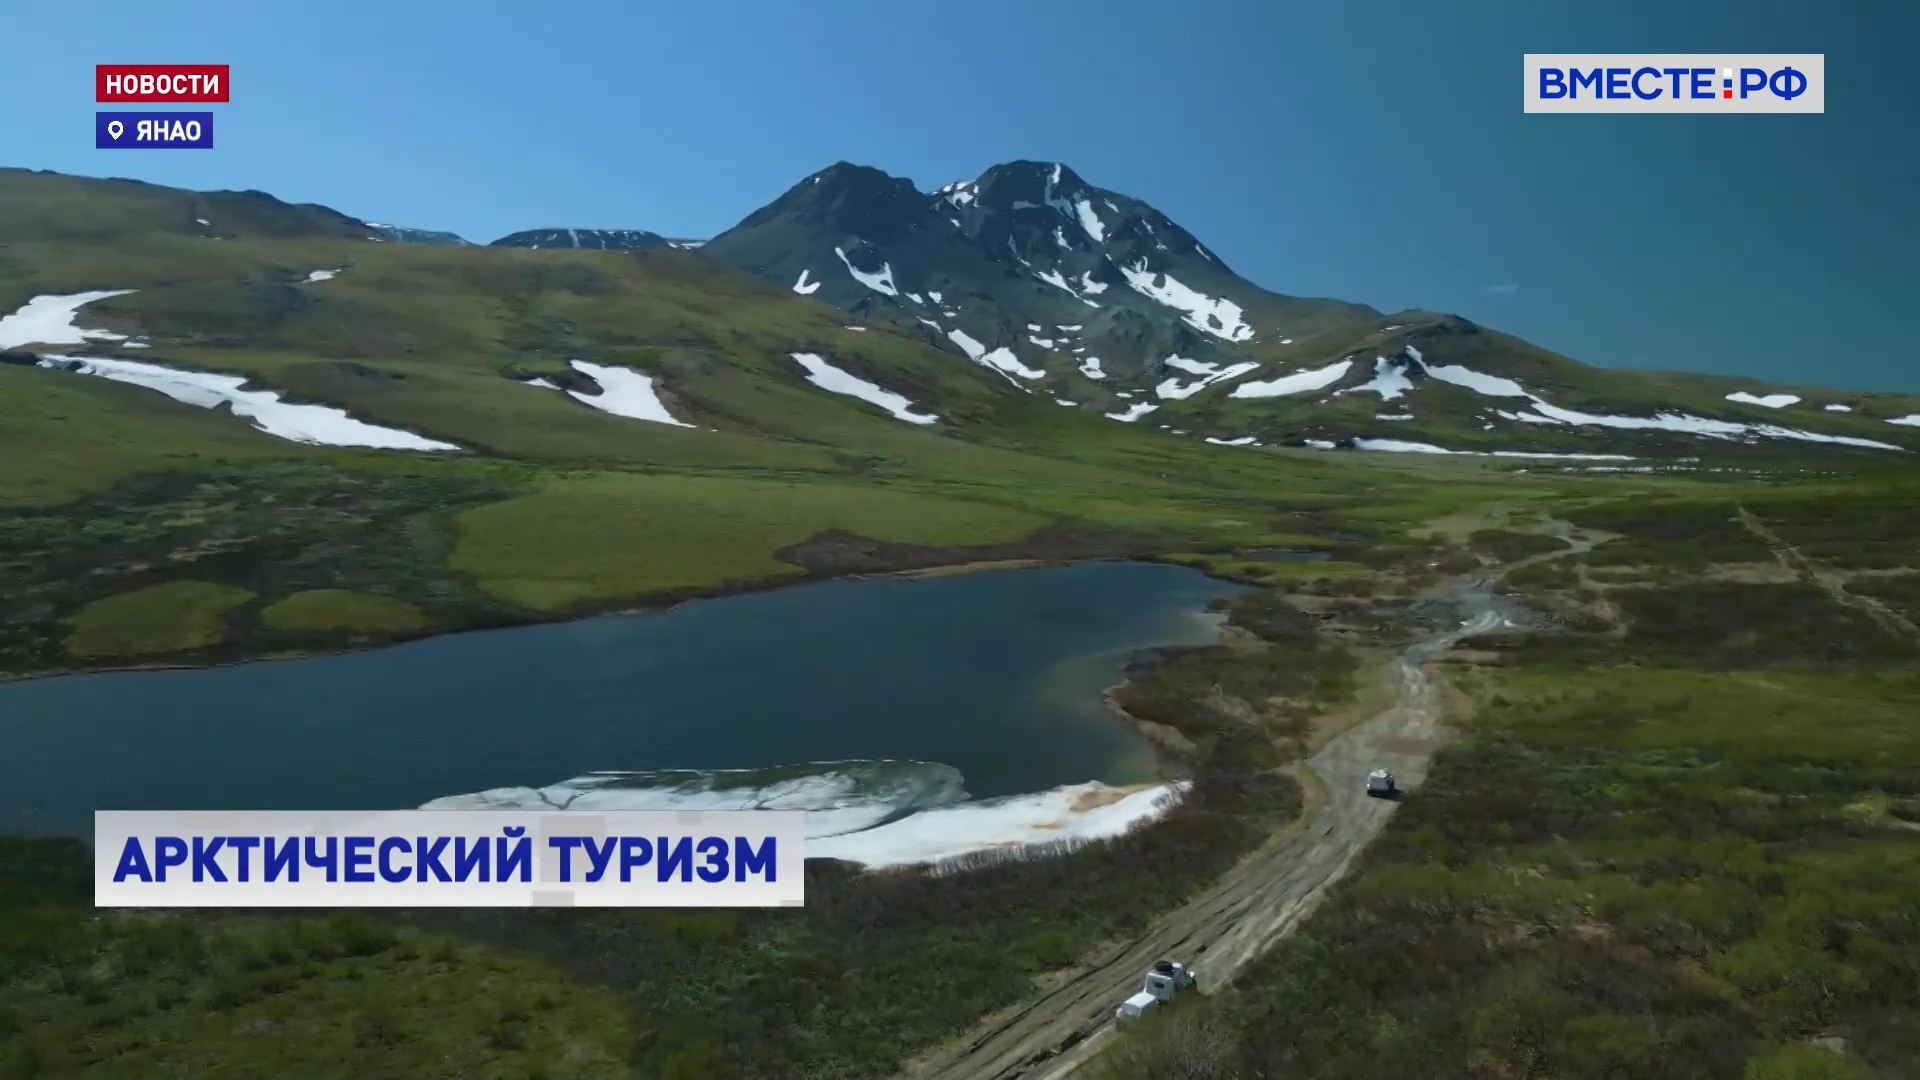 Студенческие экспедиции из Москвы изучили самые популярные туристические маршруты Ямала